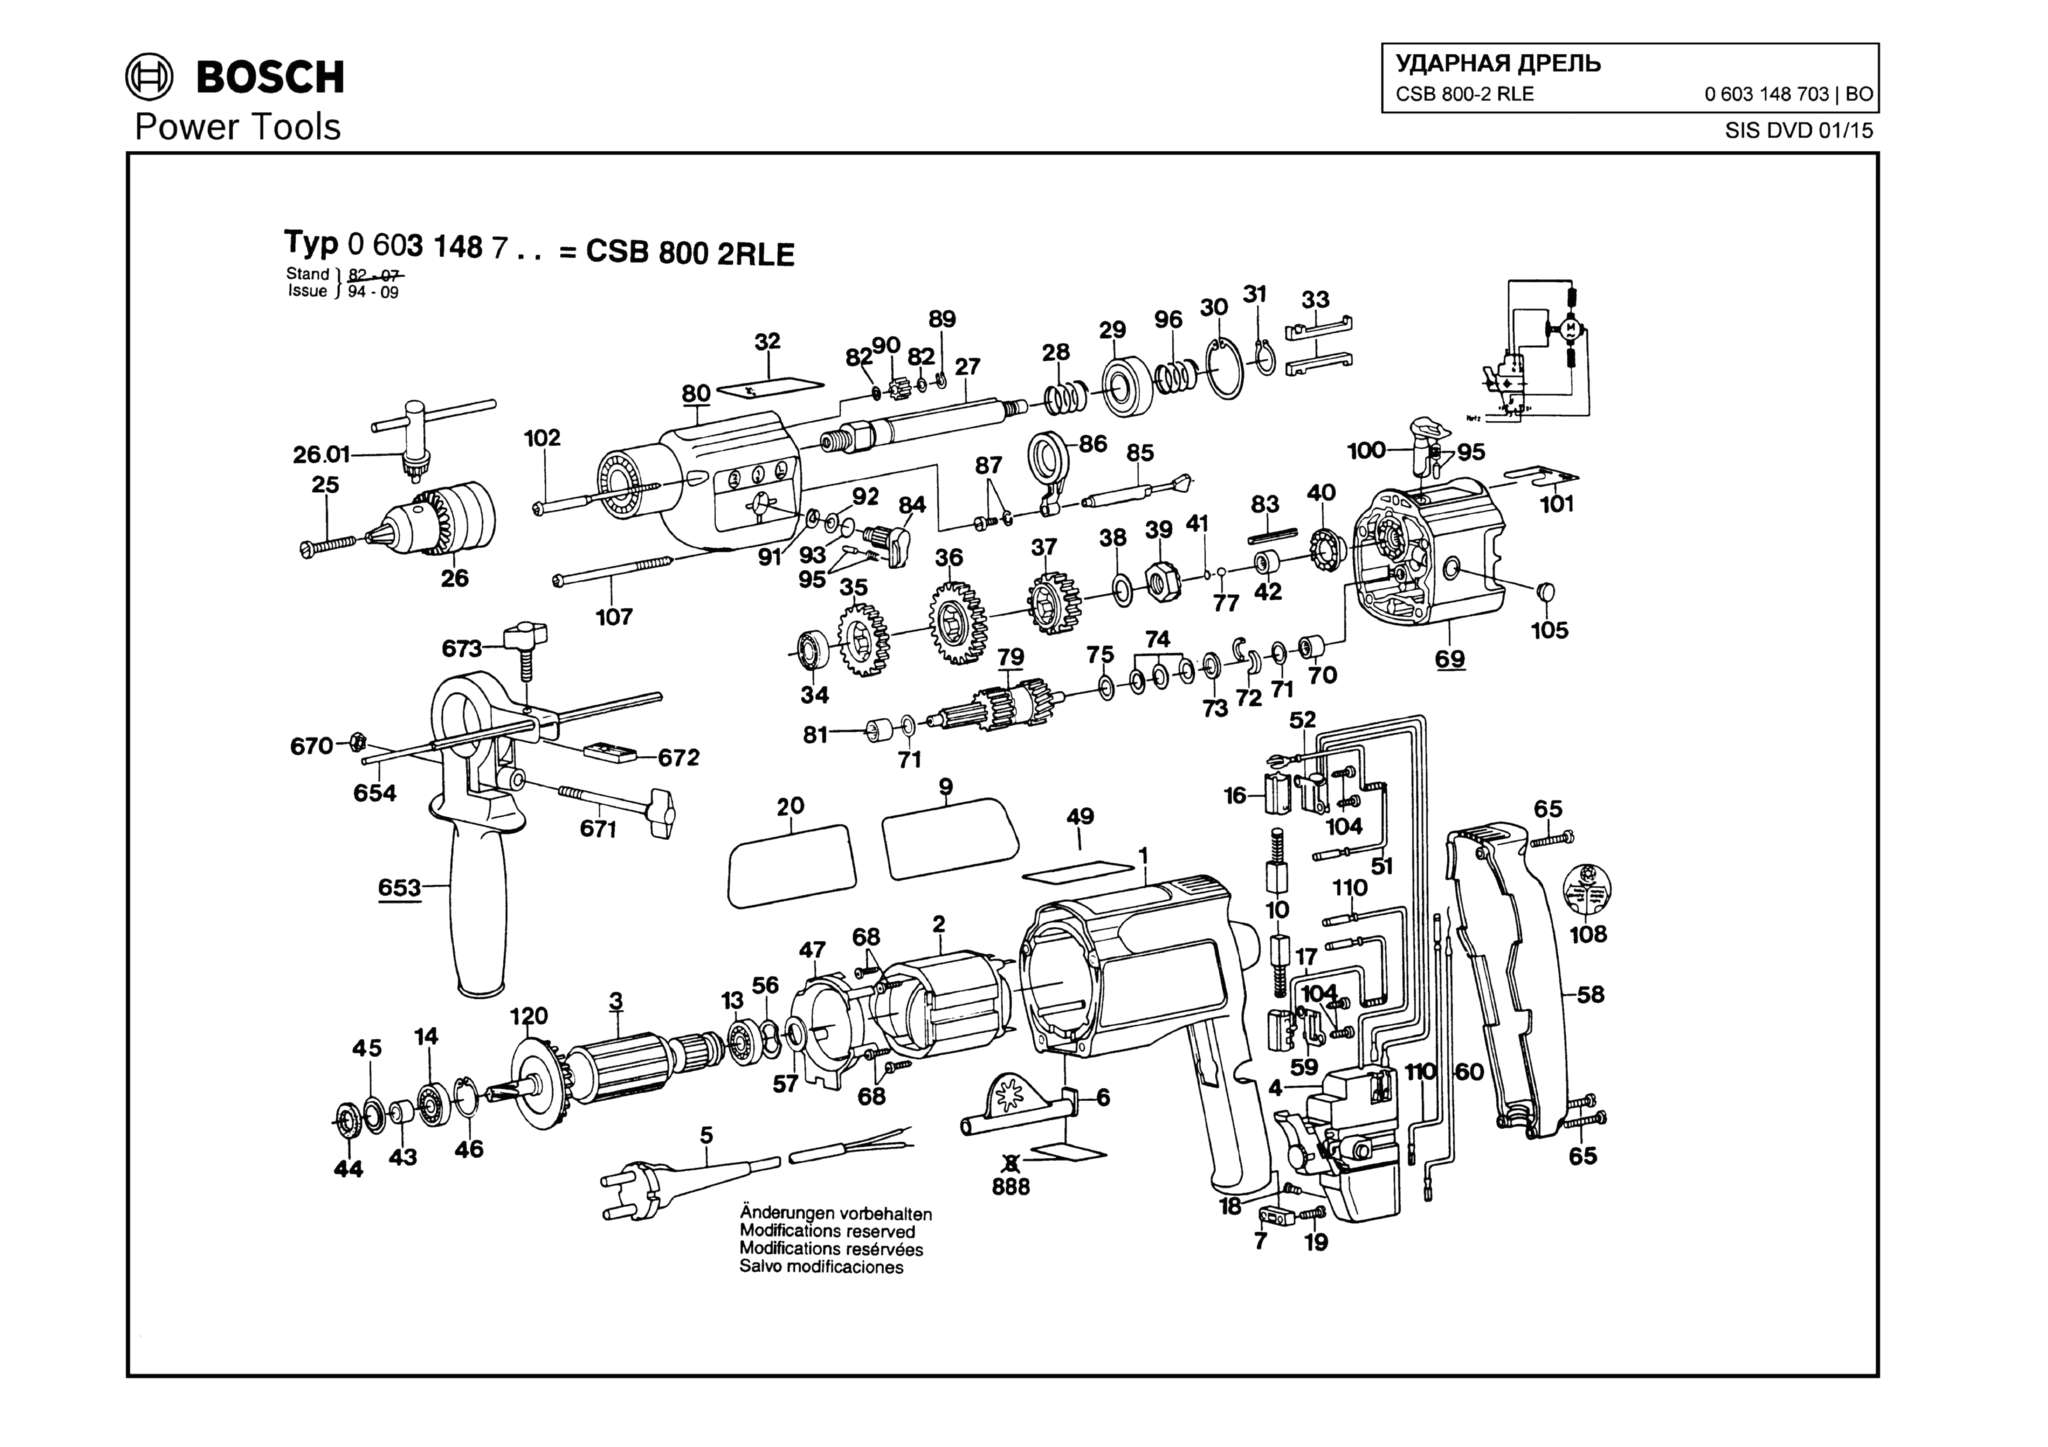 Запчасти, схема и деталировка Bosch CSB 800-2 RLE (ТИП 0603148703)